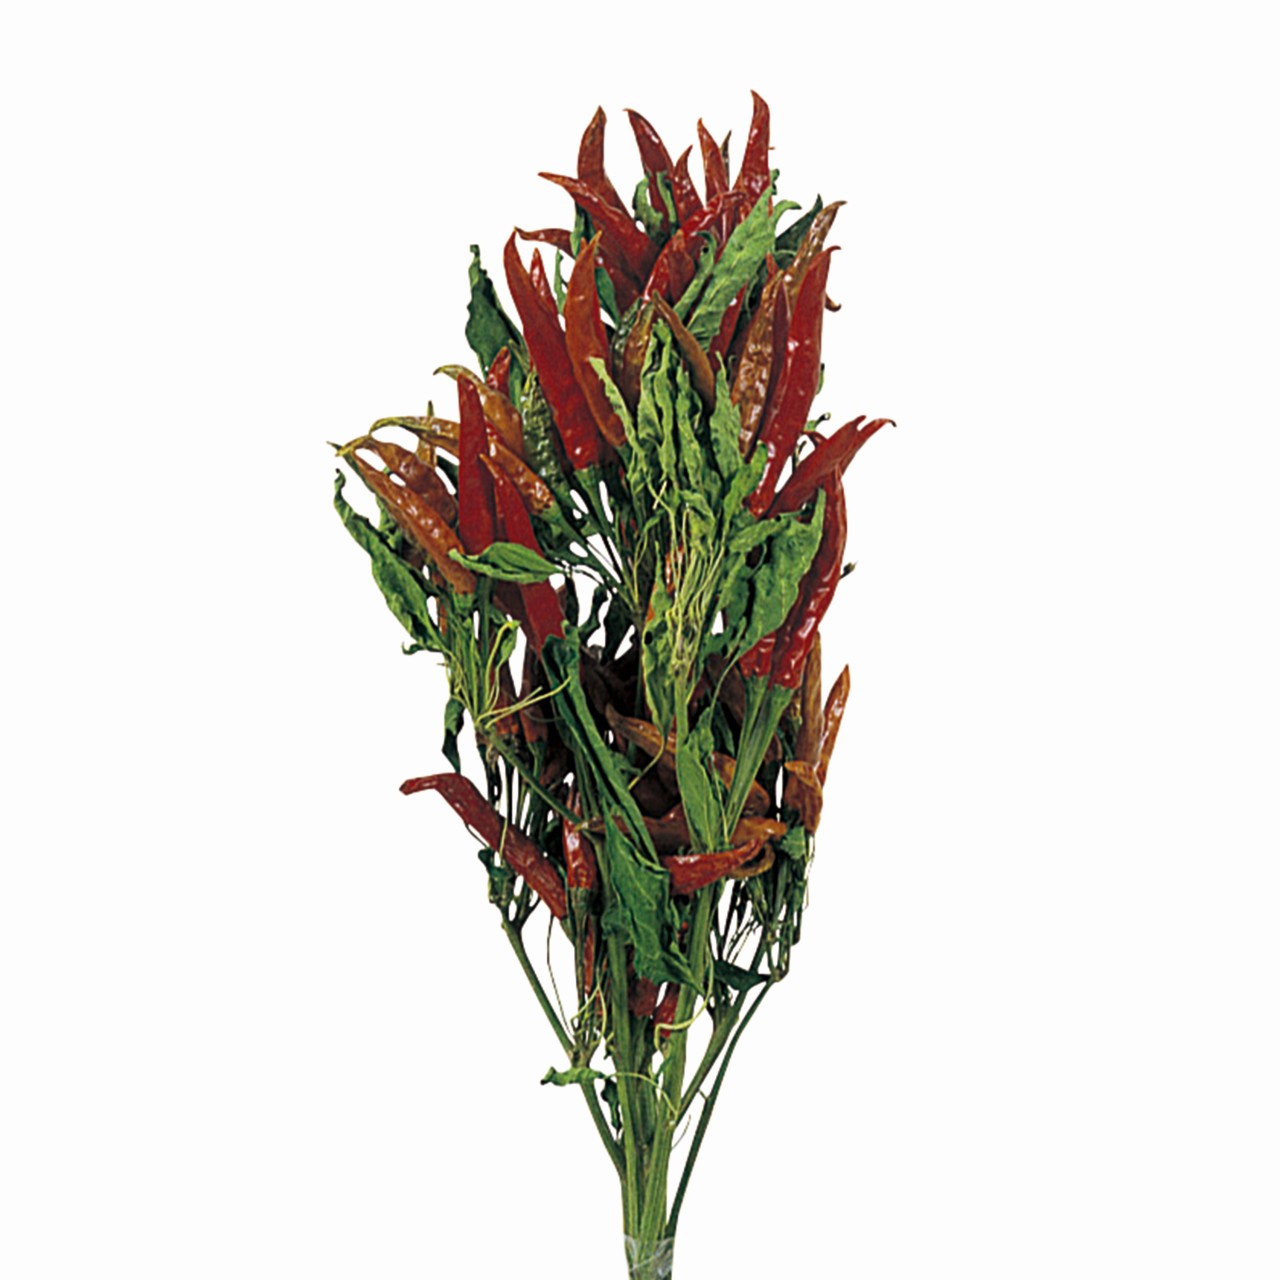 マイフラ 通販 風の花 トウガラシ 枝付き ドライフラワー Dn ナチュラル 長さ 約40cm ドライフラワー ナチュラル素材 全国にmagiq 花器 花資材などをお届けします